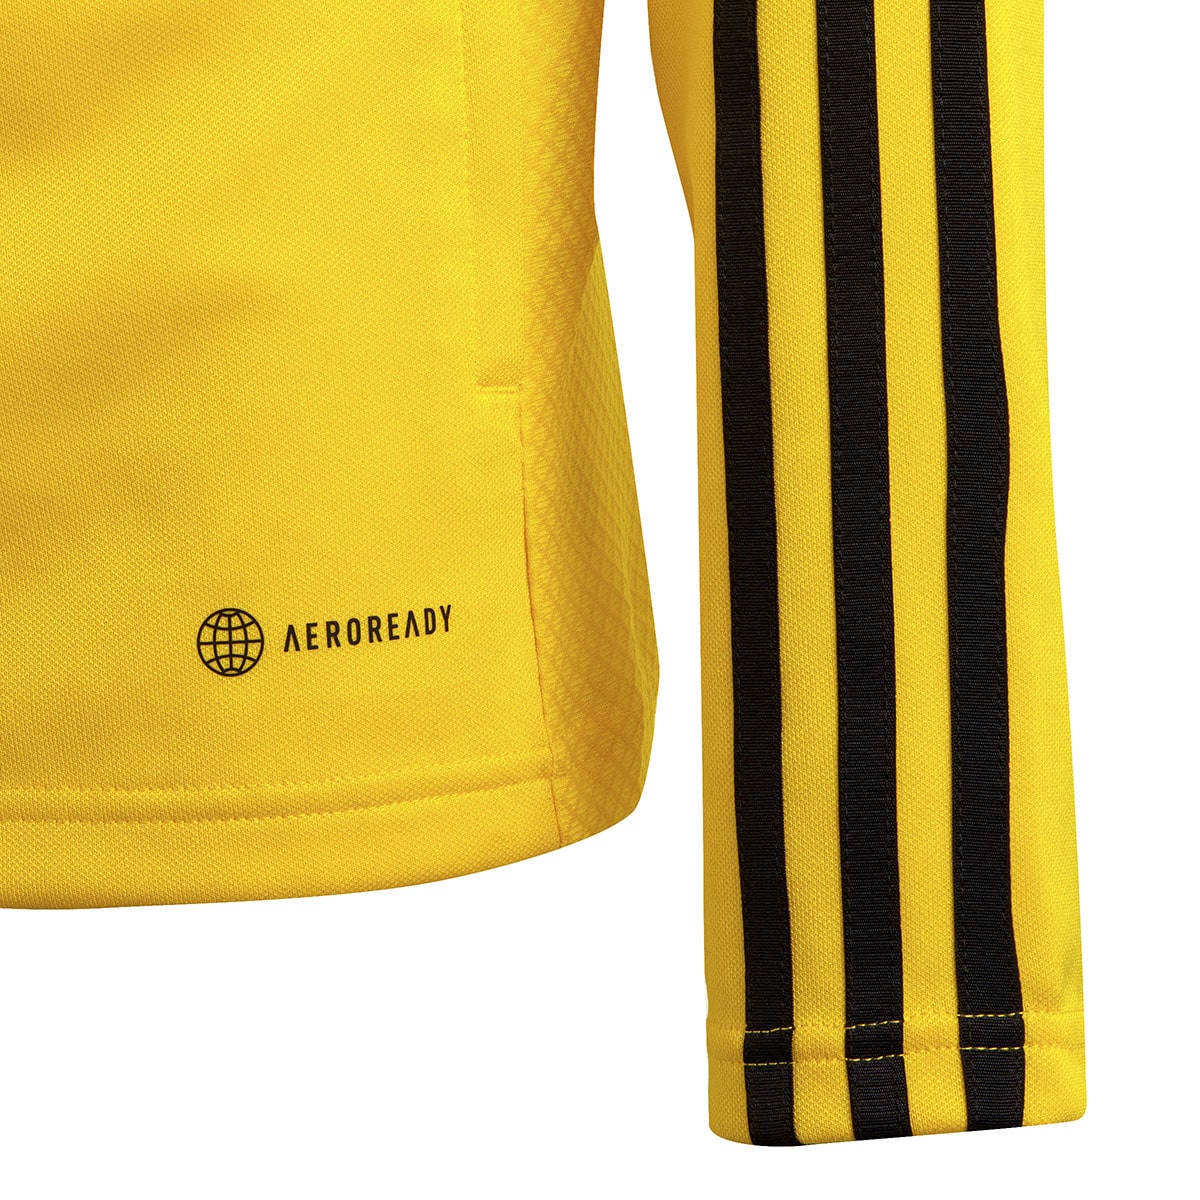 Adidas Kinder Trainingsjacke Tiro 23 gelb